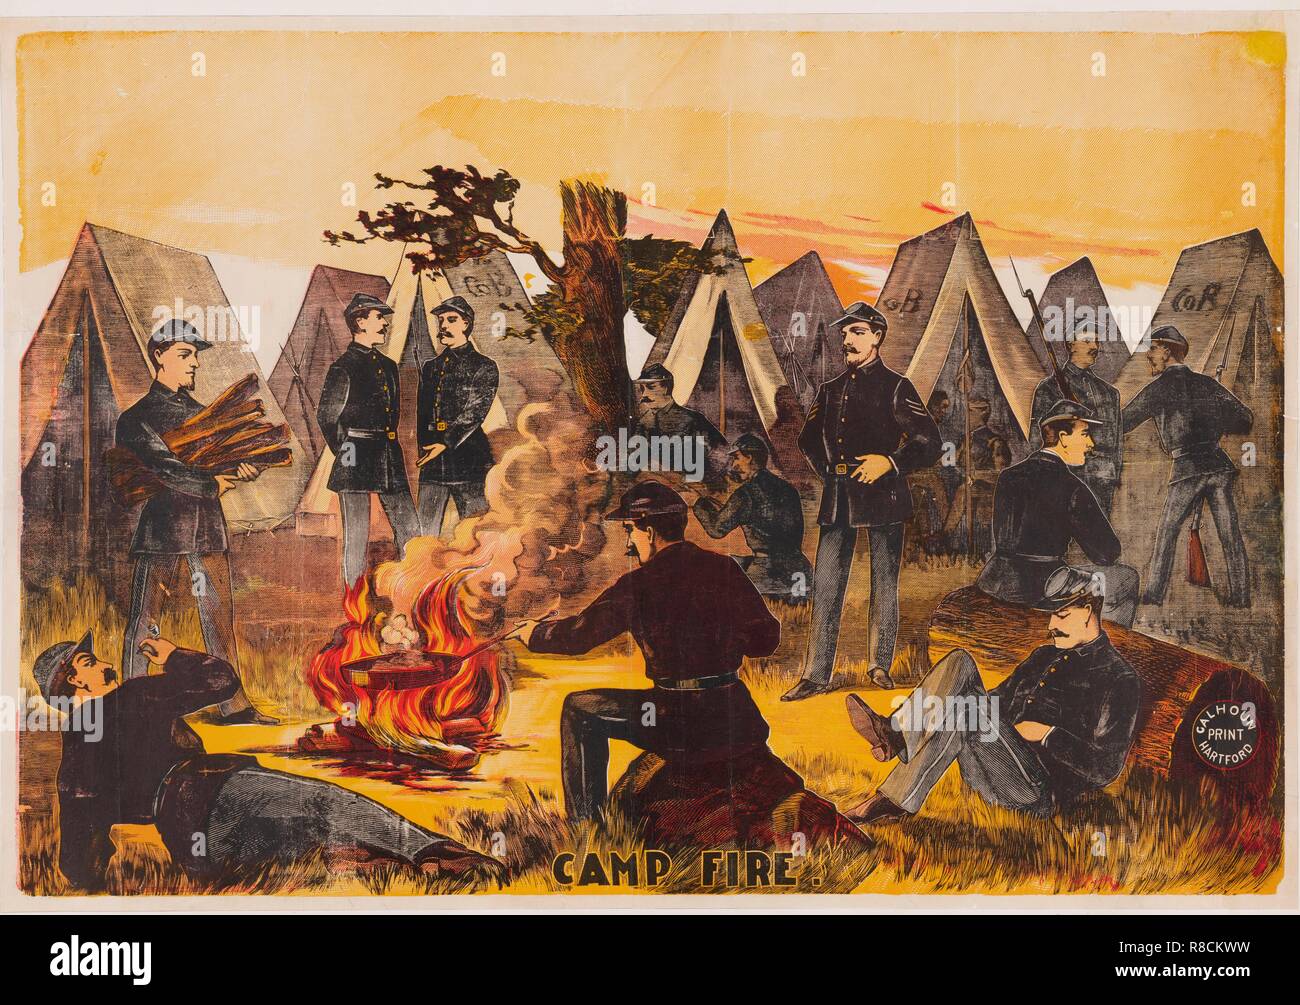 Fuego de campamento, pub. c1865 Color (litografía) Creador: American School (siglo xix). Foto de stock